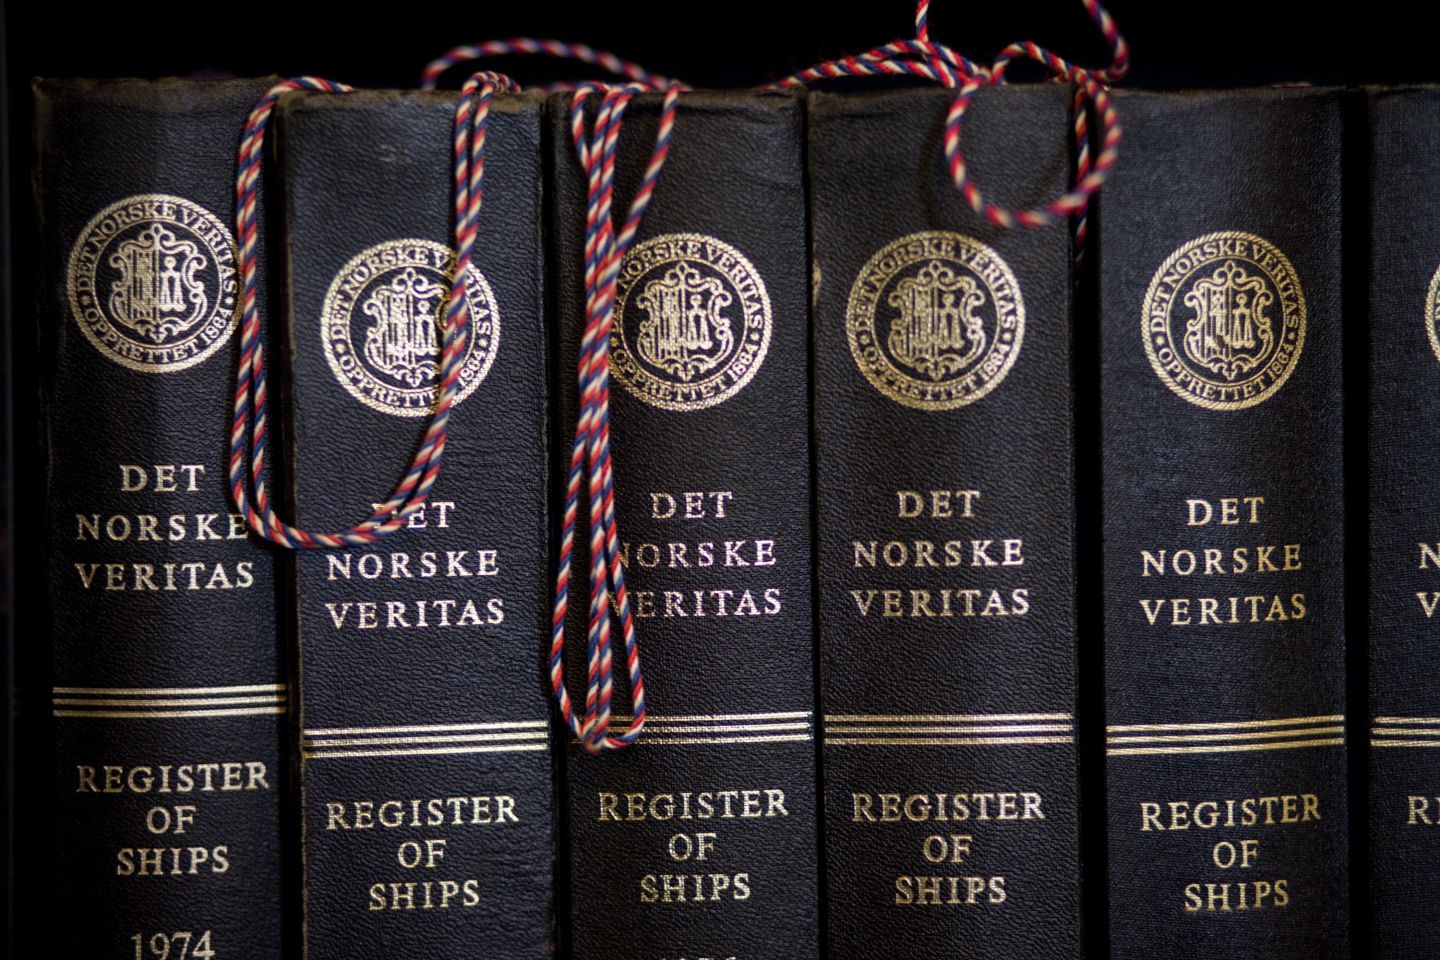 Boeken van de Norske Veritas over bescherming van leven, eigendom en milieu